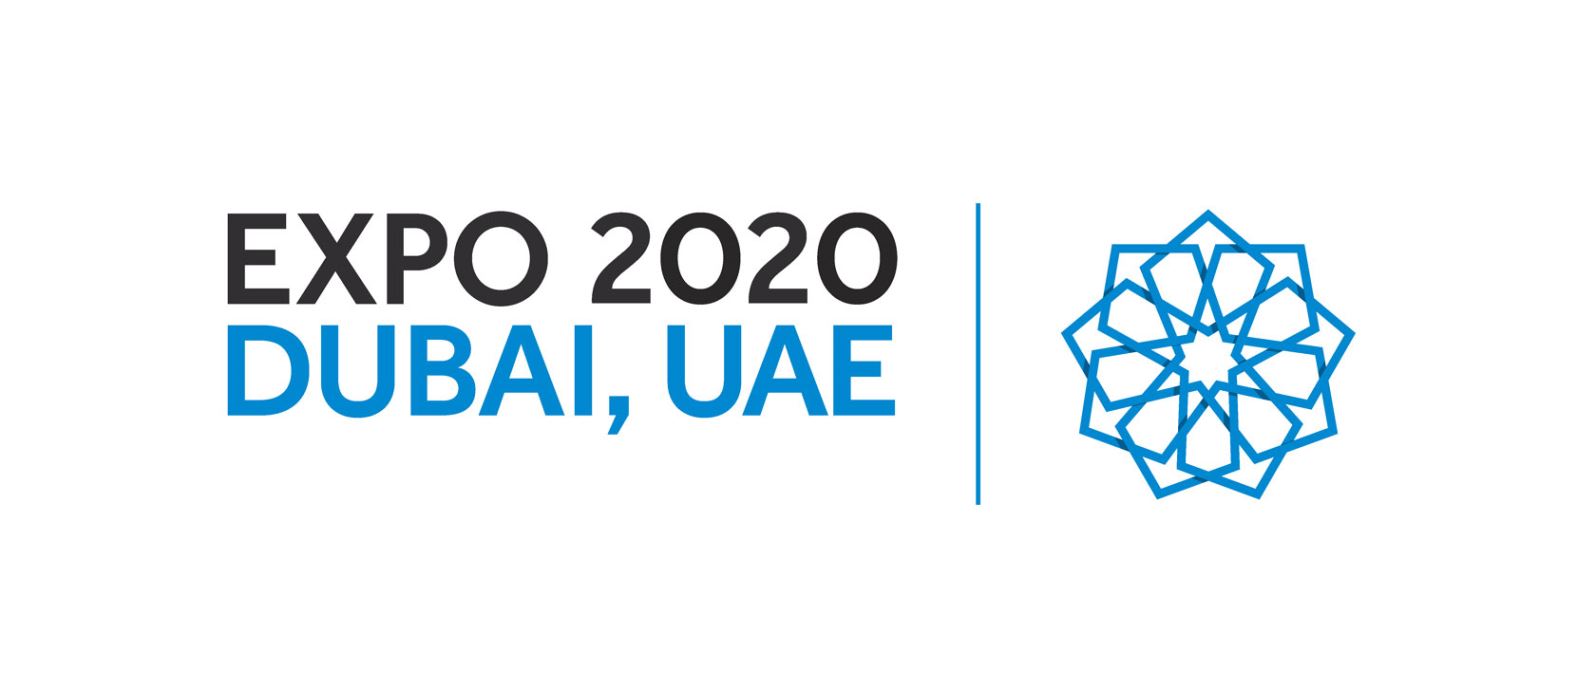 Dubai EXPO 2020: ТОП-10 Самых Грандиозных Инвестиционных Проектов